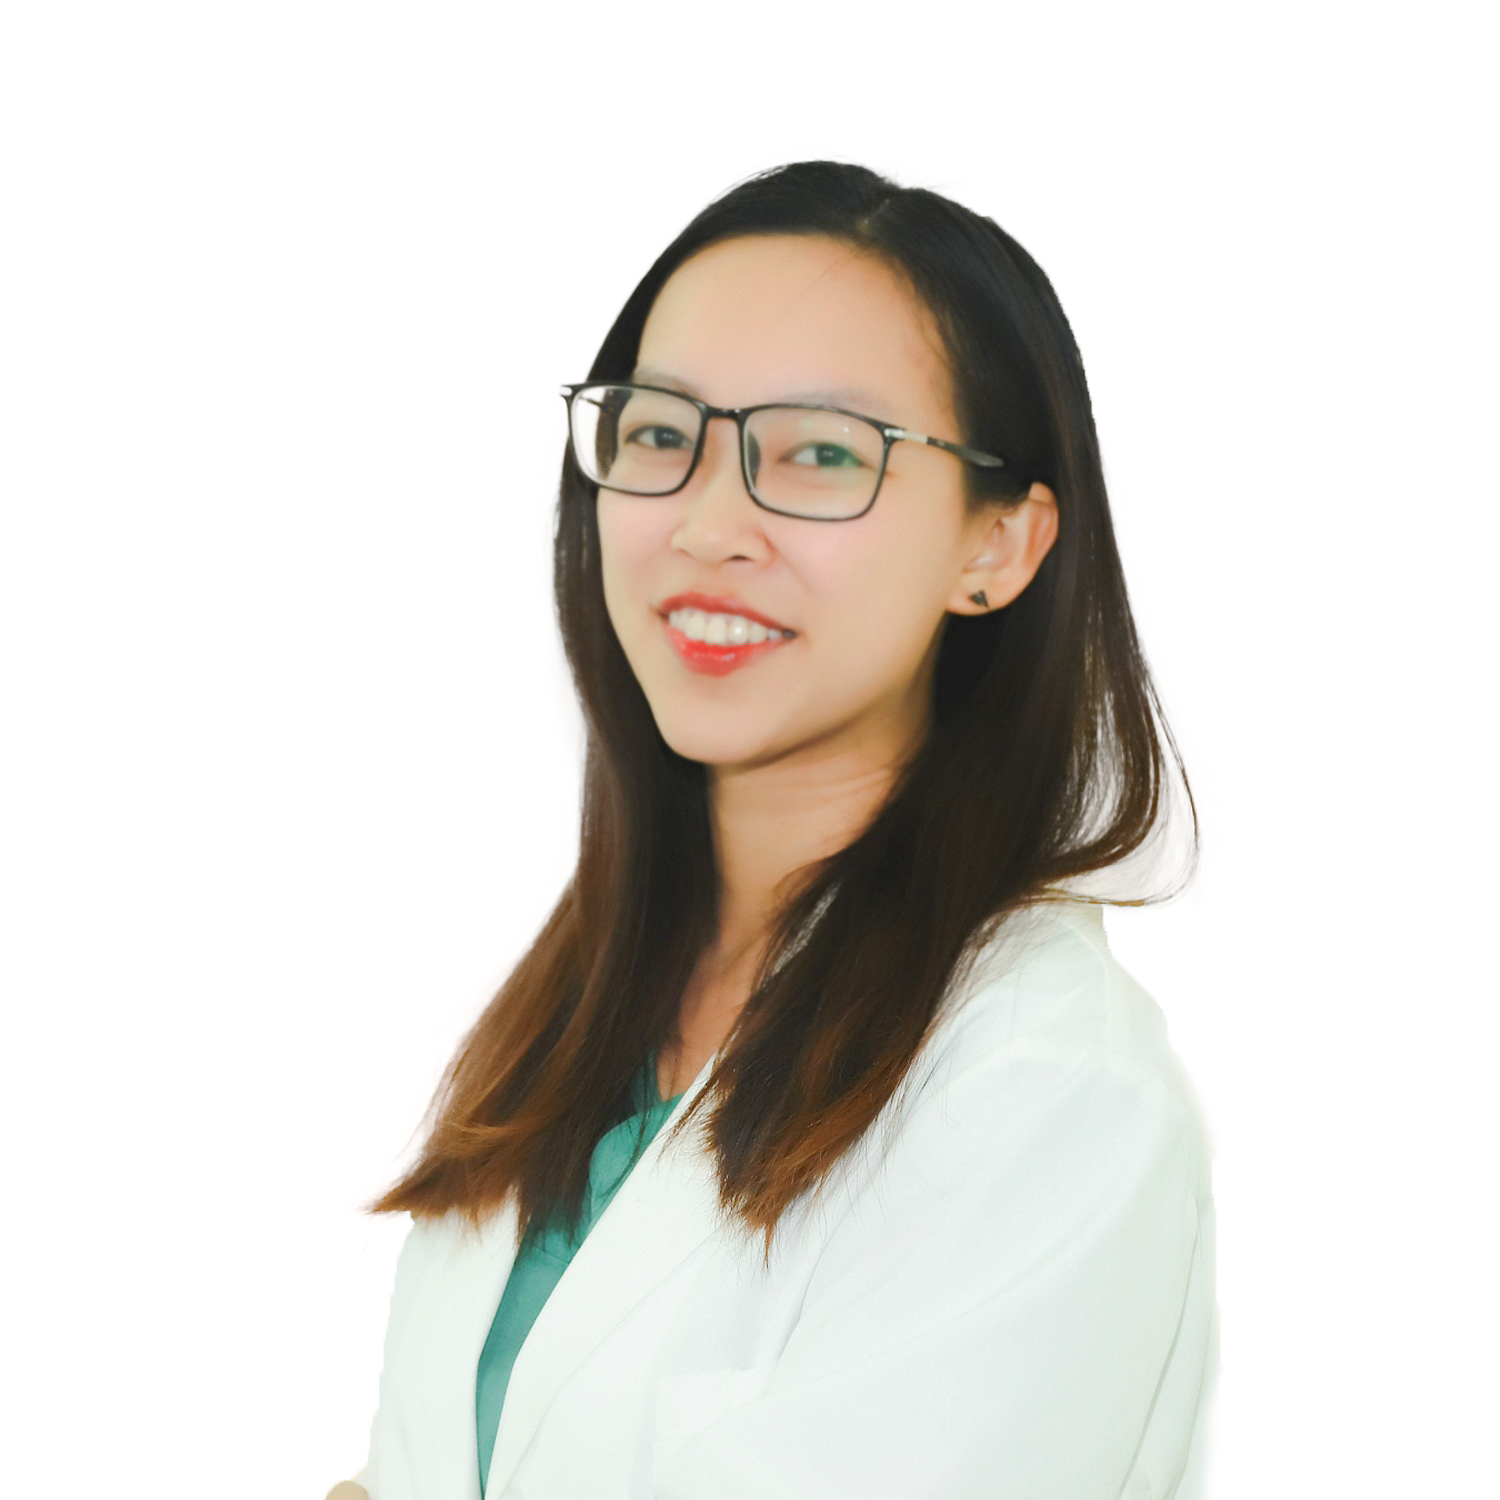 Giới thiệu Bác sĩ Hà Tâm - Bác sĩ trẻ có tâm với nghề